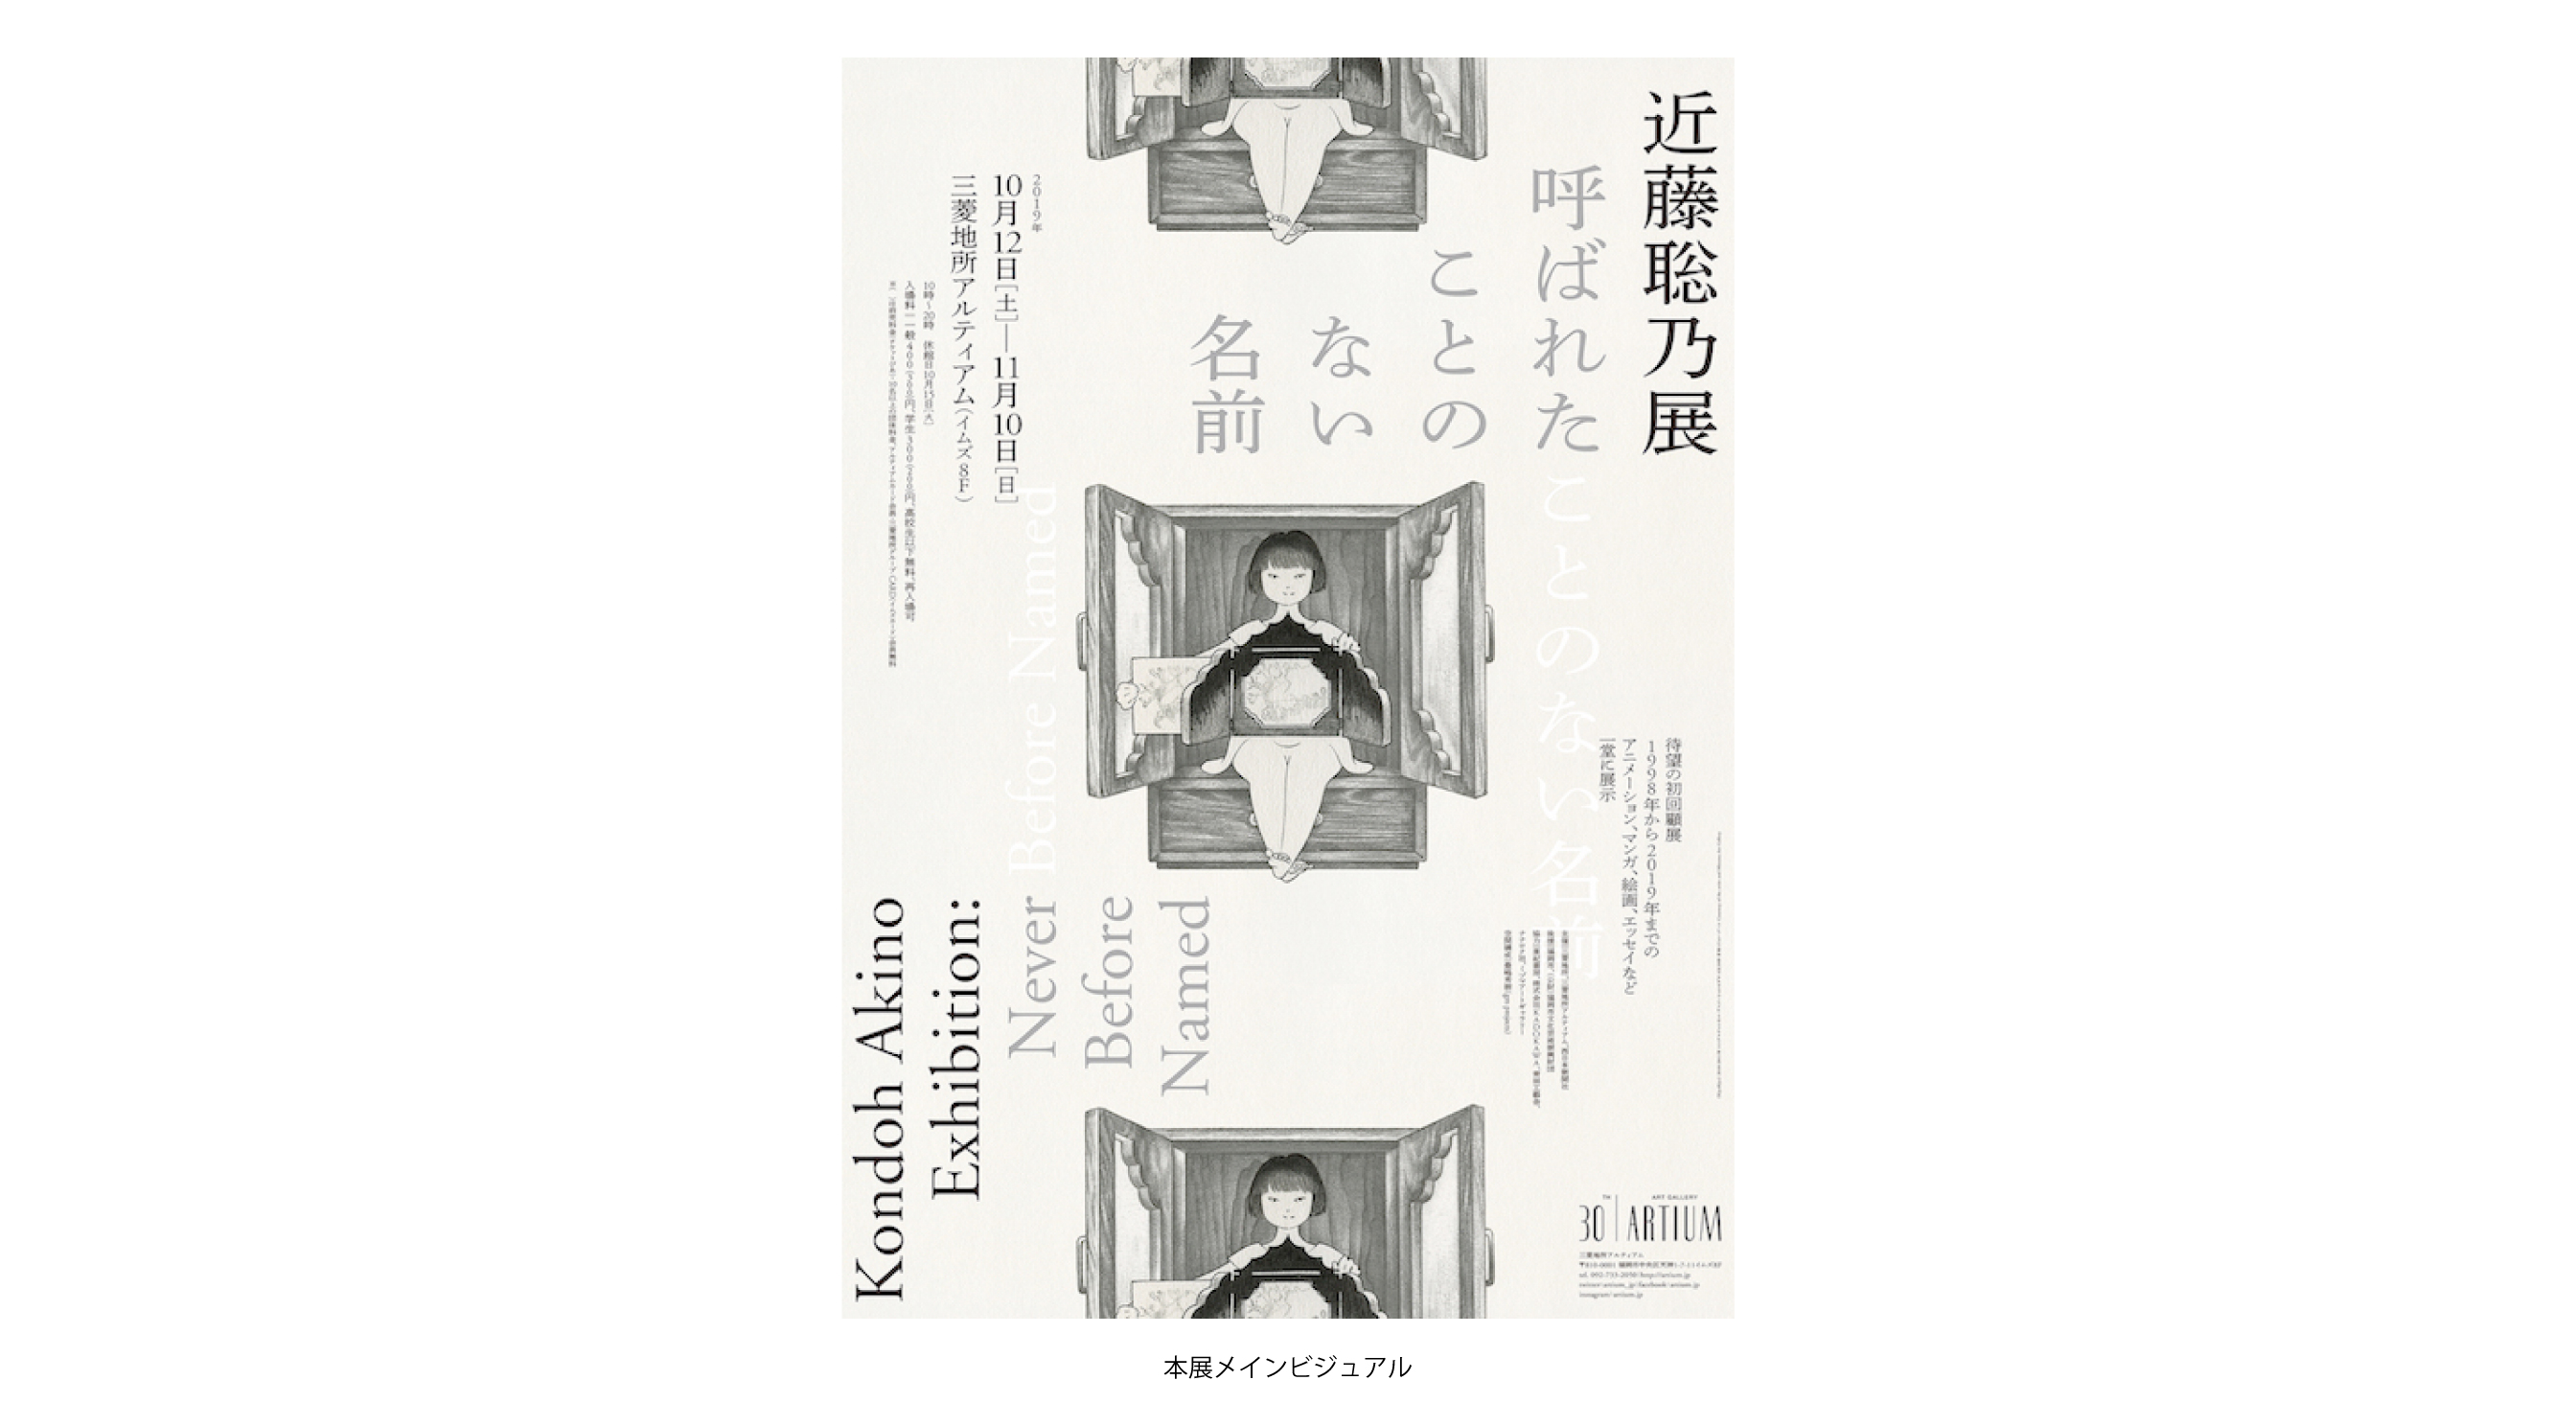 近藤聡乃展 呼ばれたことのない名前 Kondoh Akino Exhibition Never Before Named アートヒューマンプロジェクト 熊本のアート カルチャー情報サイト